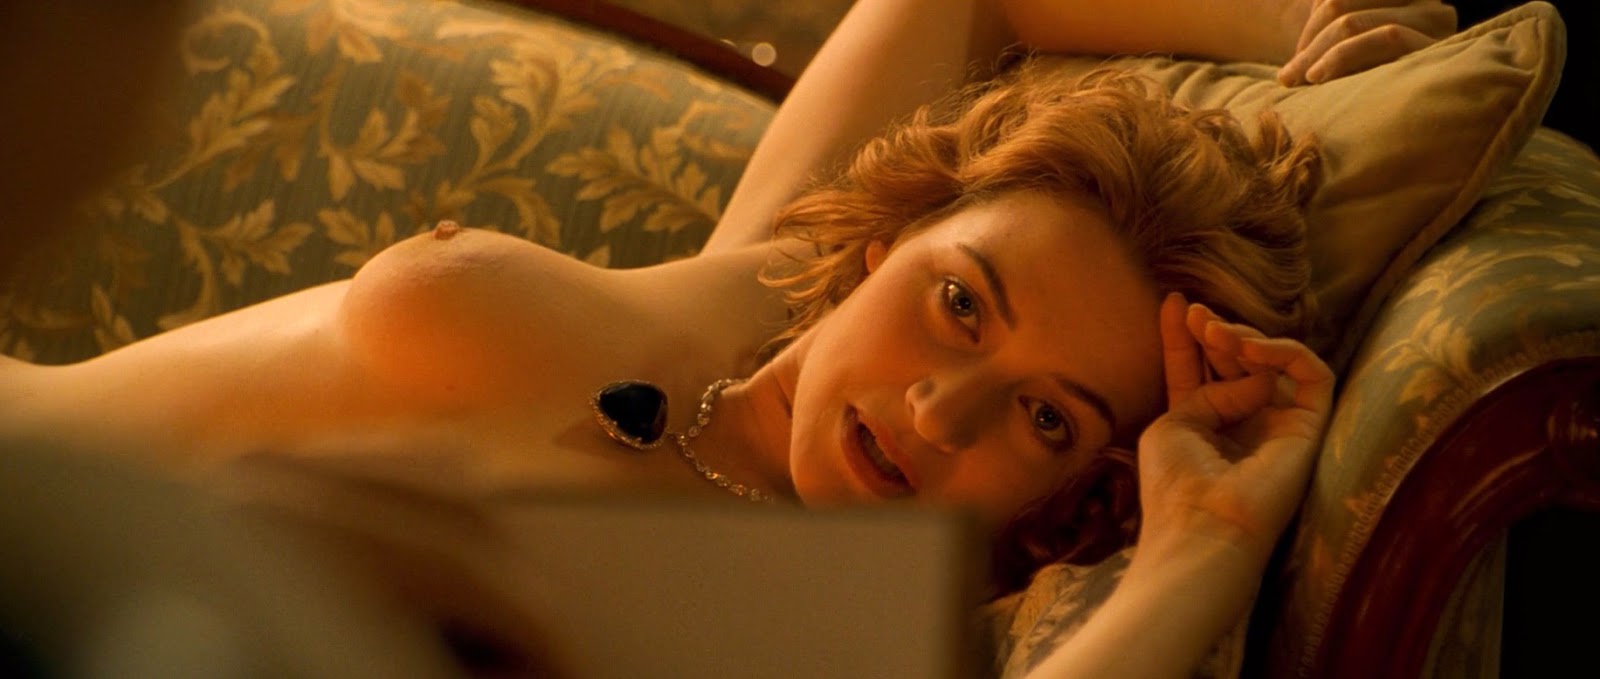 Самые обсуждаемые обнаженные сцены в кино Кейт Уинслет Титаник фильм голая